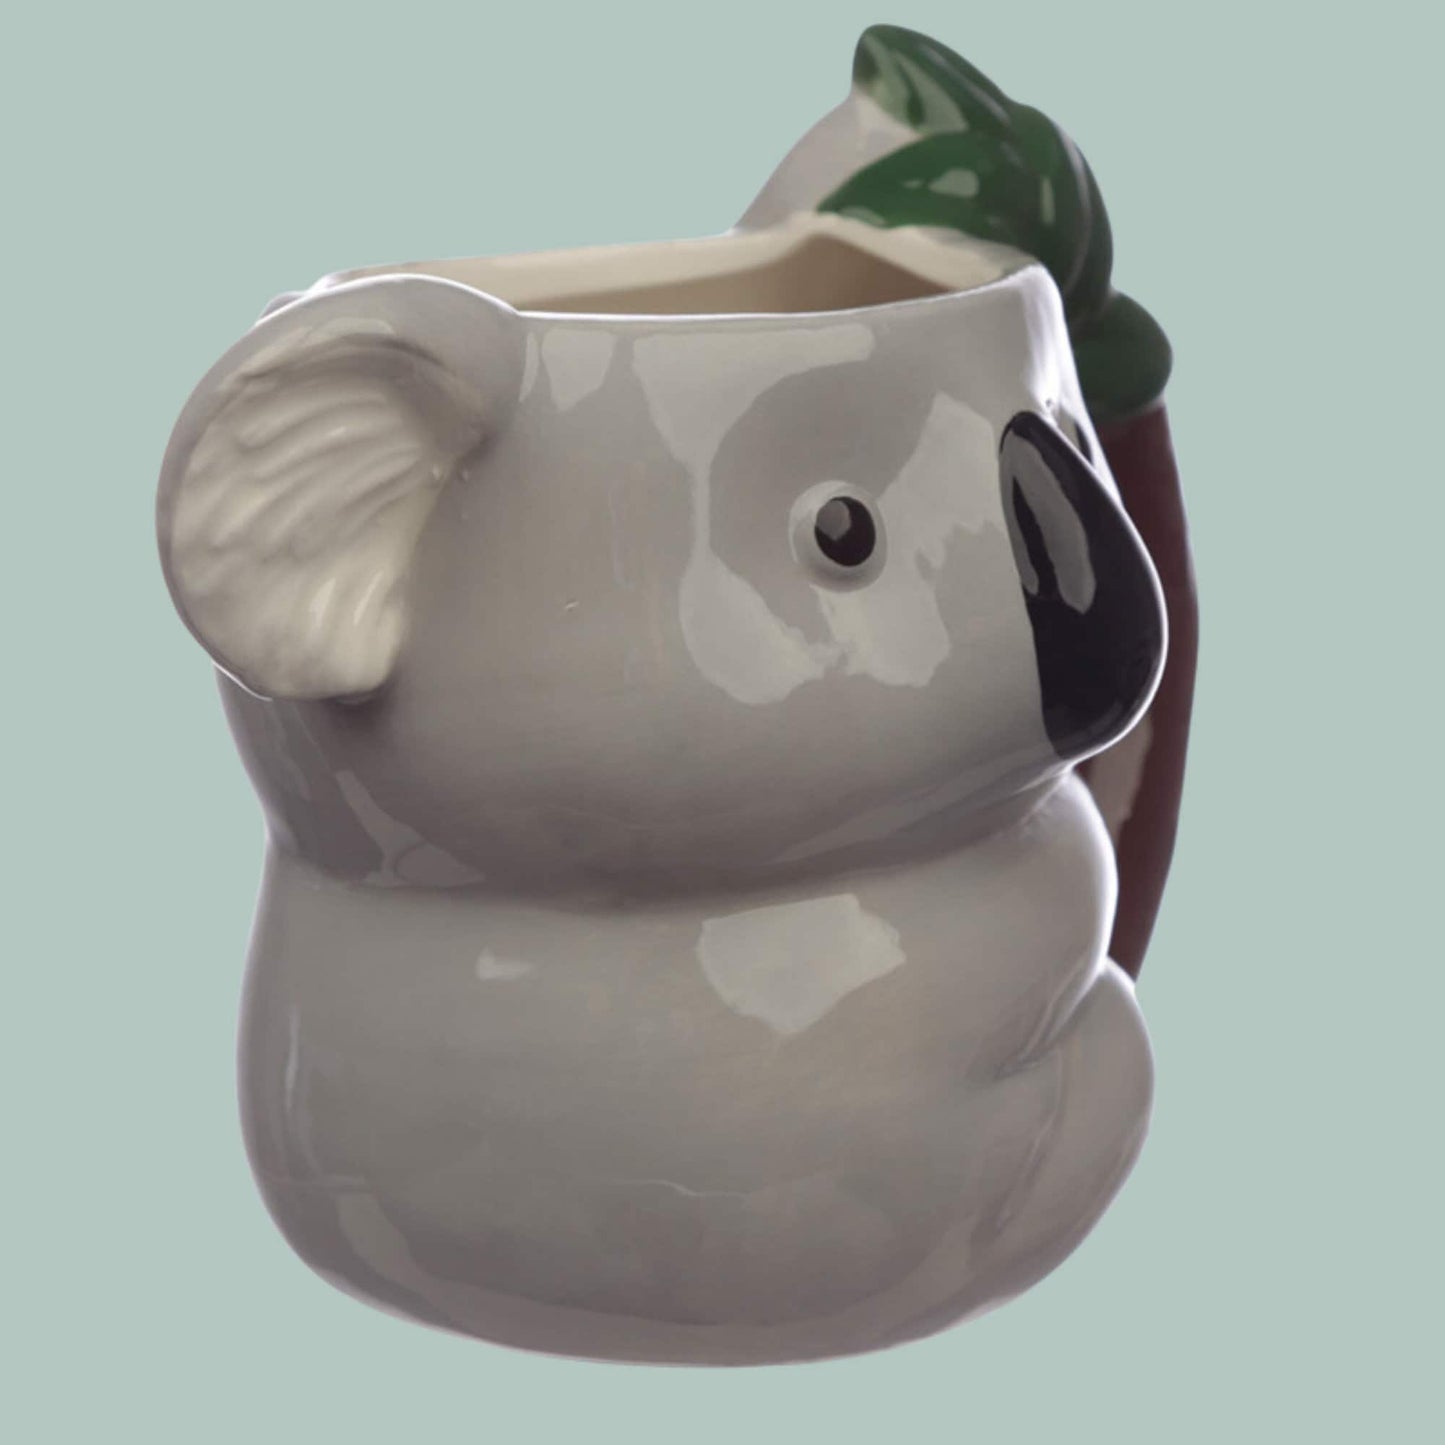 Cute Novelty Koala Shaped Mug